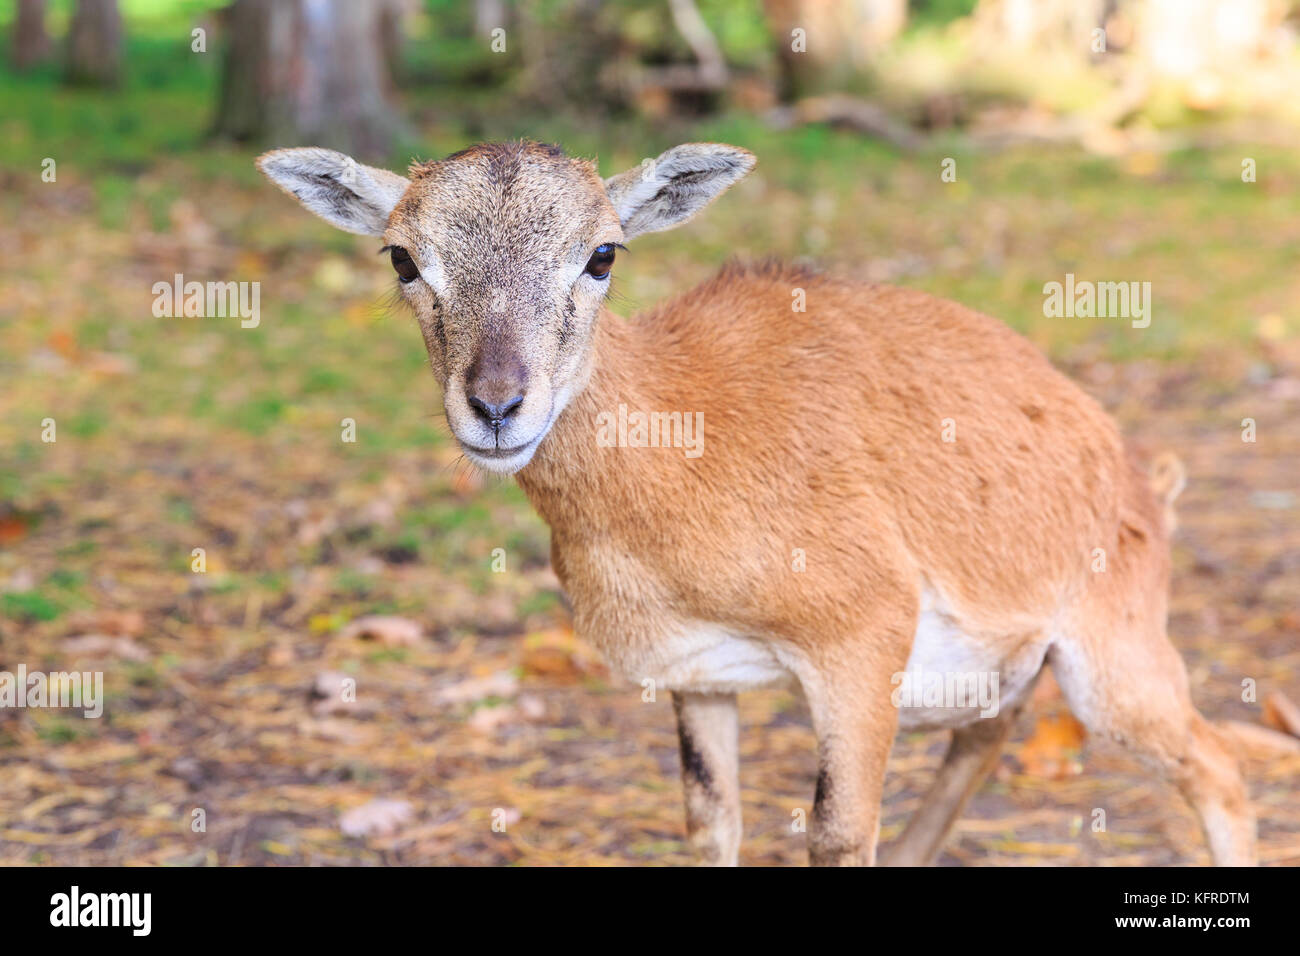 Mouflon européen (ovis orientalis musimon) brebis, gros plan de la femelle dans les bois, Allemagne Banque D'Images